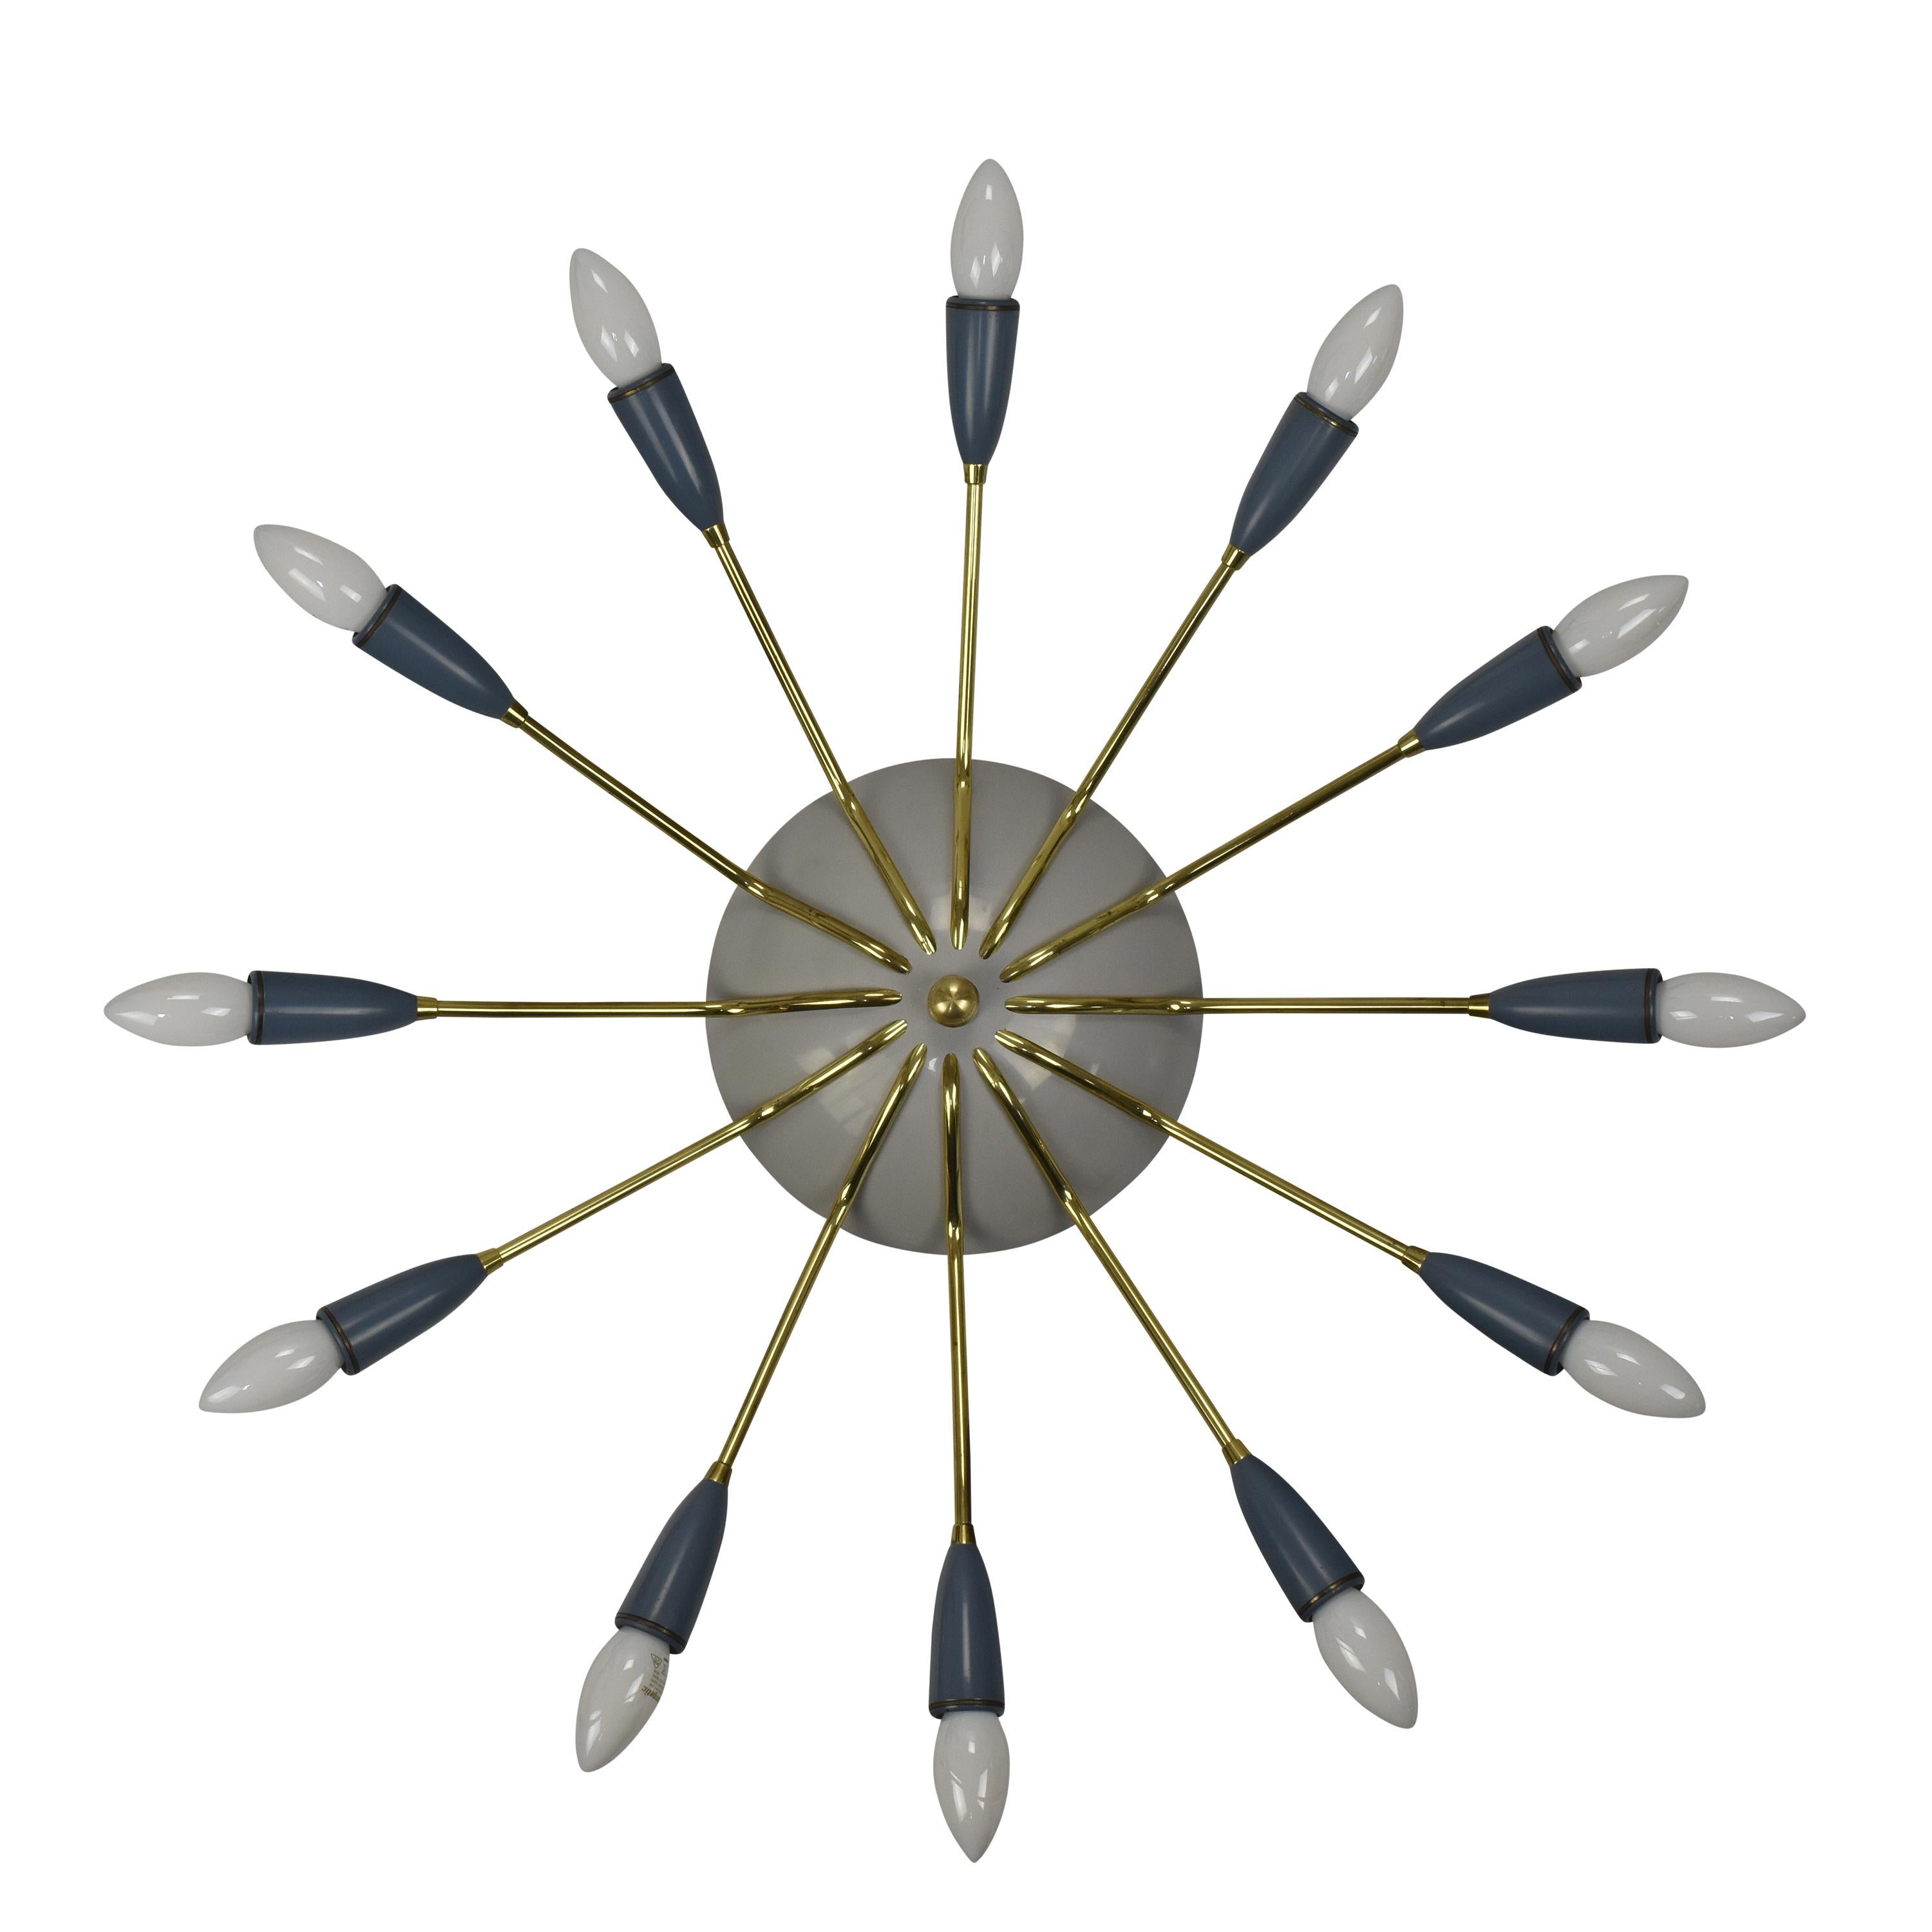 Dieser große Sputnik-Kronleuchter, der in den 1950er Jahren in Italien hergestellt wurde, ist ein echter Blickfang. 

Sie verfügt über zwölf Messingarme, die jeweils mit einer E14-Glühbirne bestückt sind. Das Design der Leuchte erinnert an eine